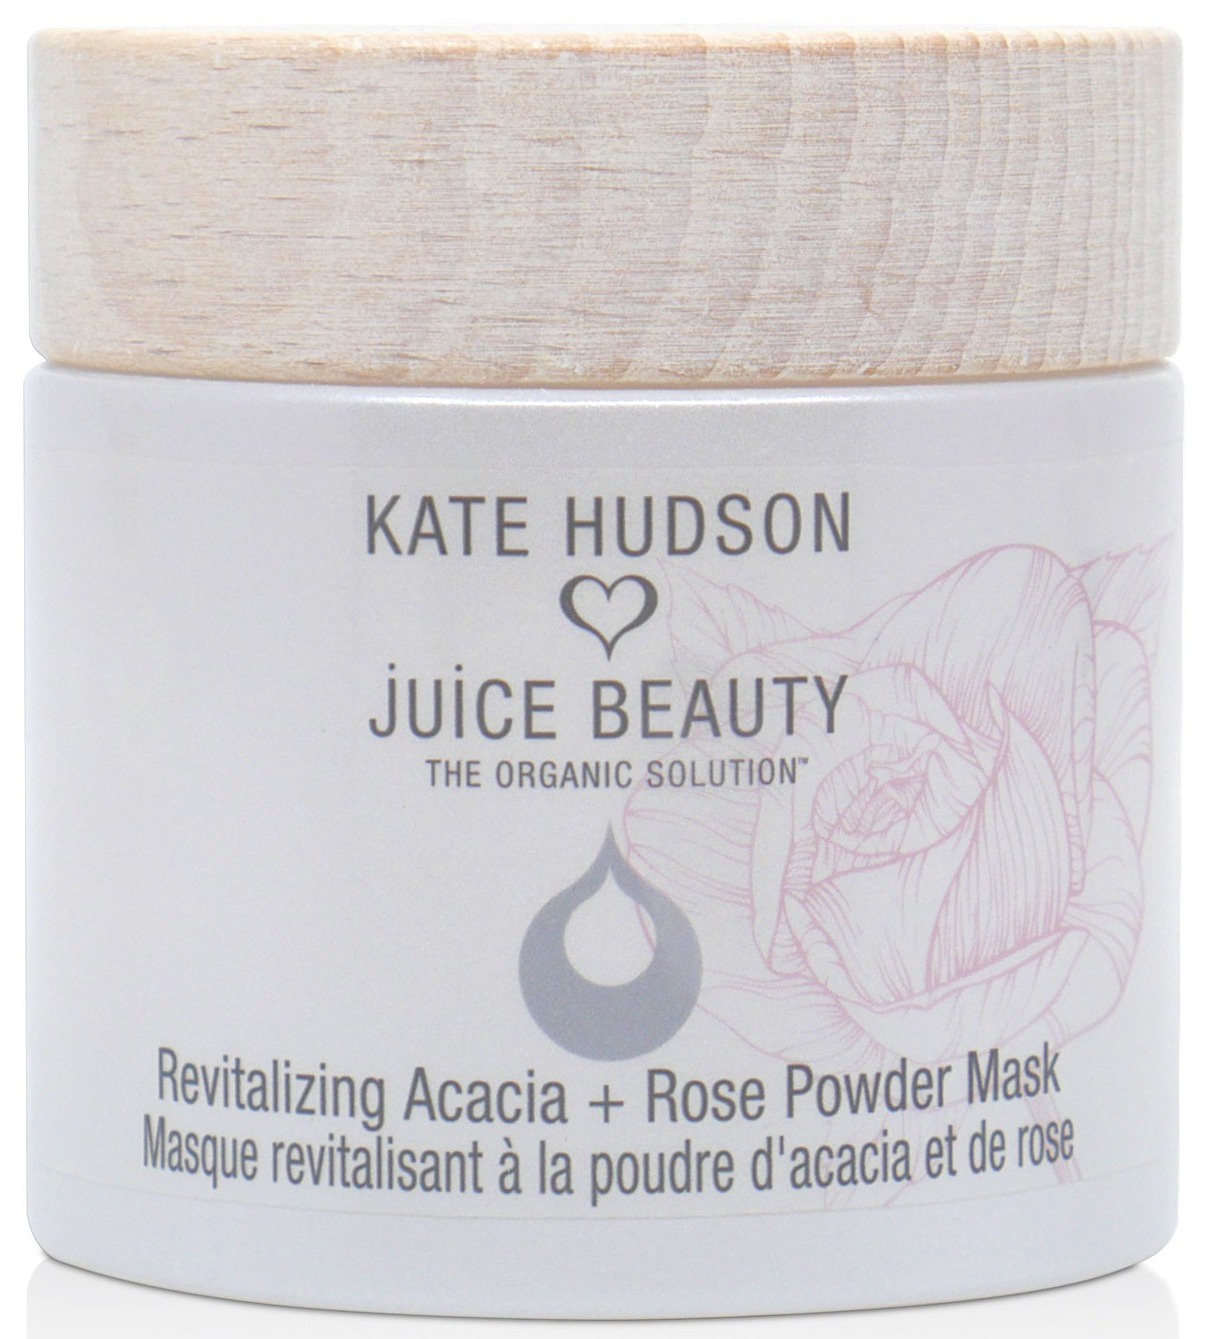 Juice Beauty Revitalizing Acacia + Rose Powder Mask